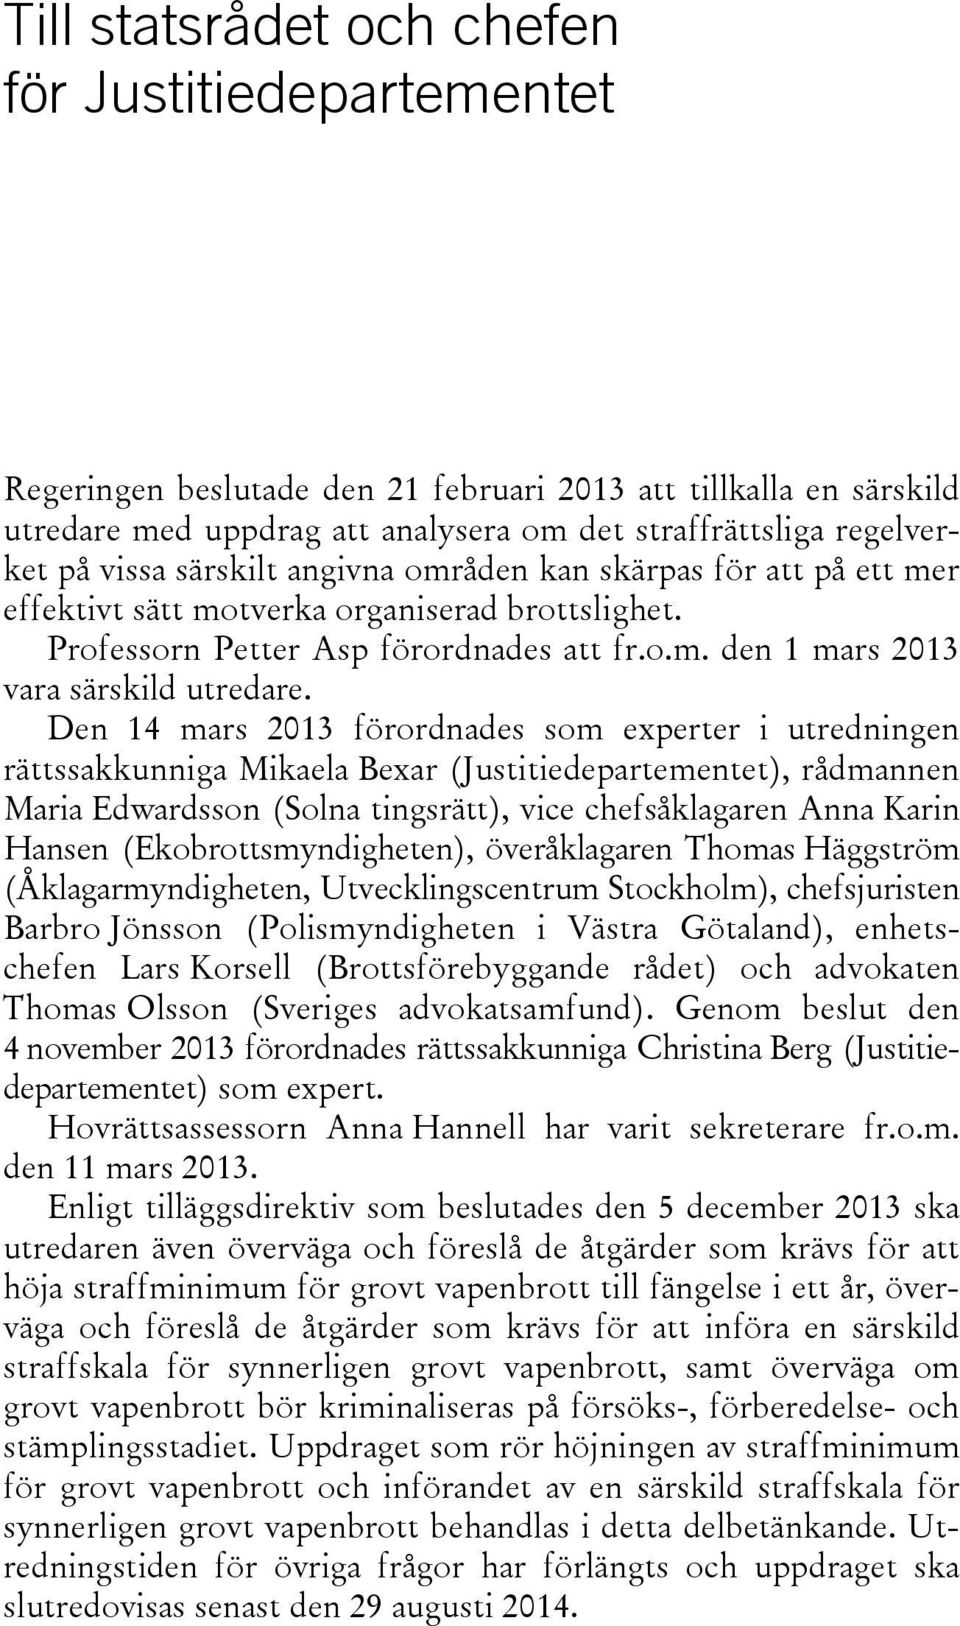 Den 14 mars 2013 förordnades som experter i utredningen rättssakkunniga Mikaela Bexar (Justitiedepartementet), rådmannen Maria Edwardsson (Solna tingsrätt), vice chefsåklagaren Anna Karin Hansen